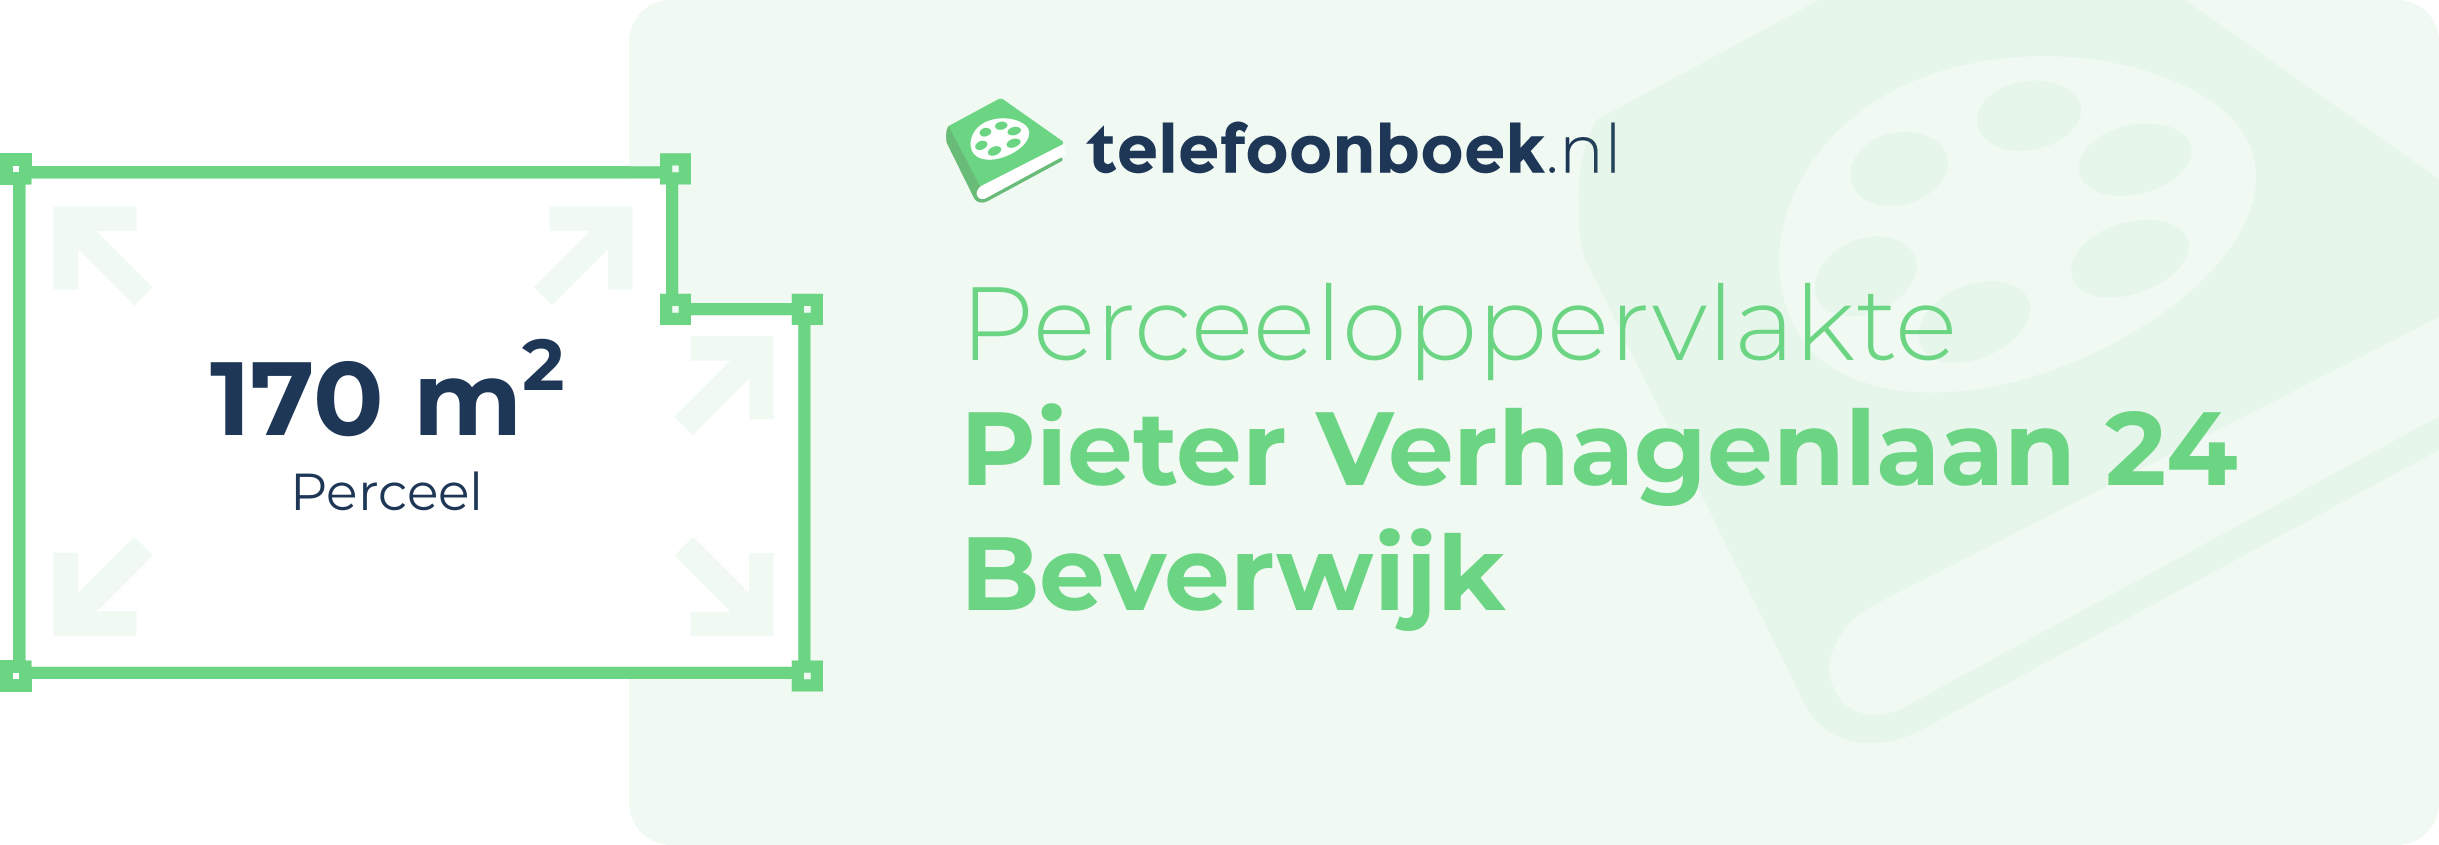 Perceeloppervlakte Pieter Verhagenlaan 24 Beverwijk